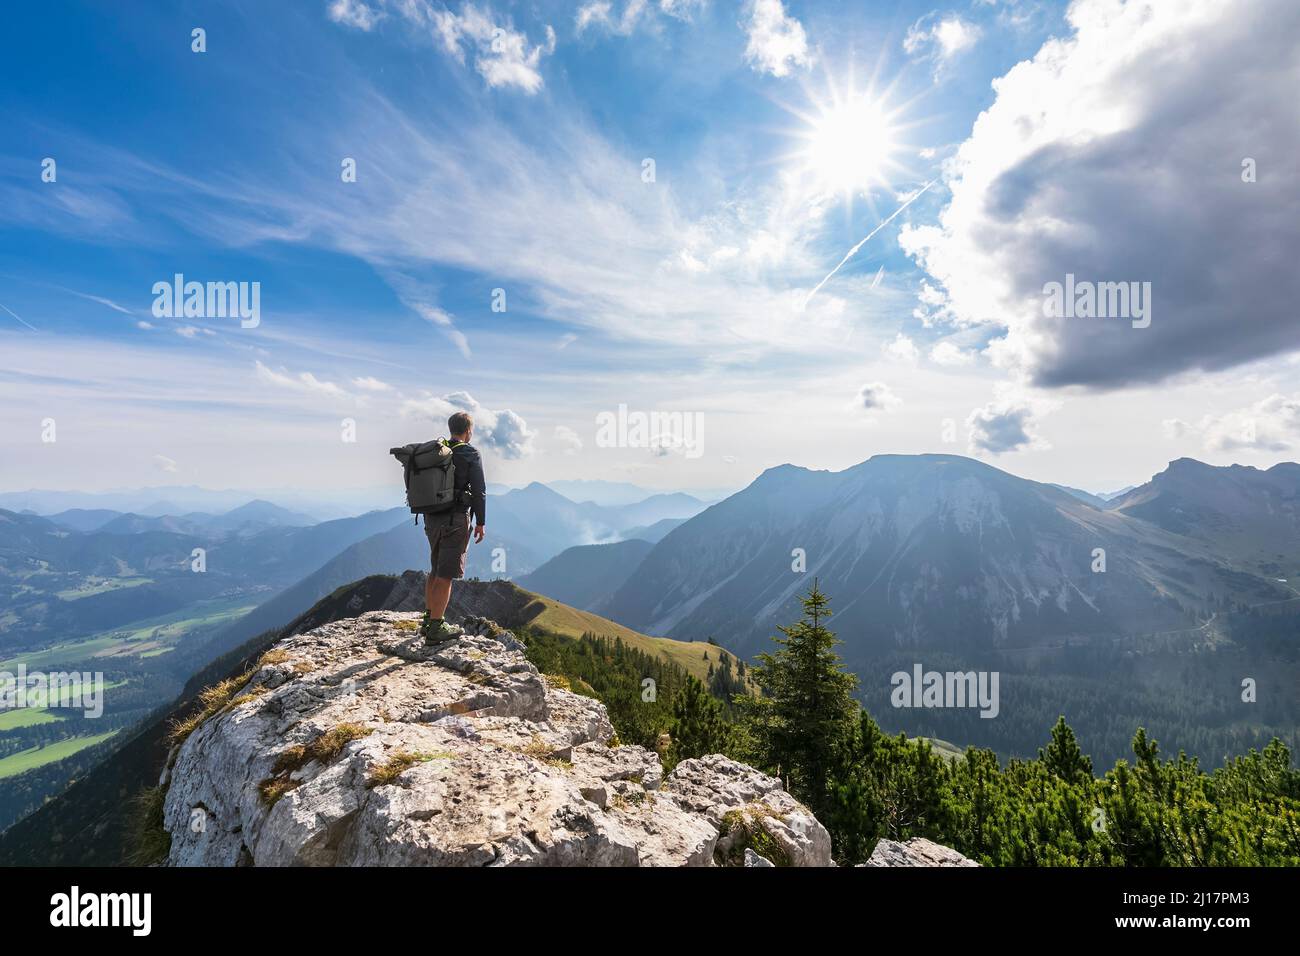 Escursionista maschile ammirando la vista dalla cima del monte Aiplspitz Foto Stock